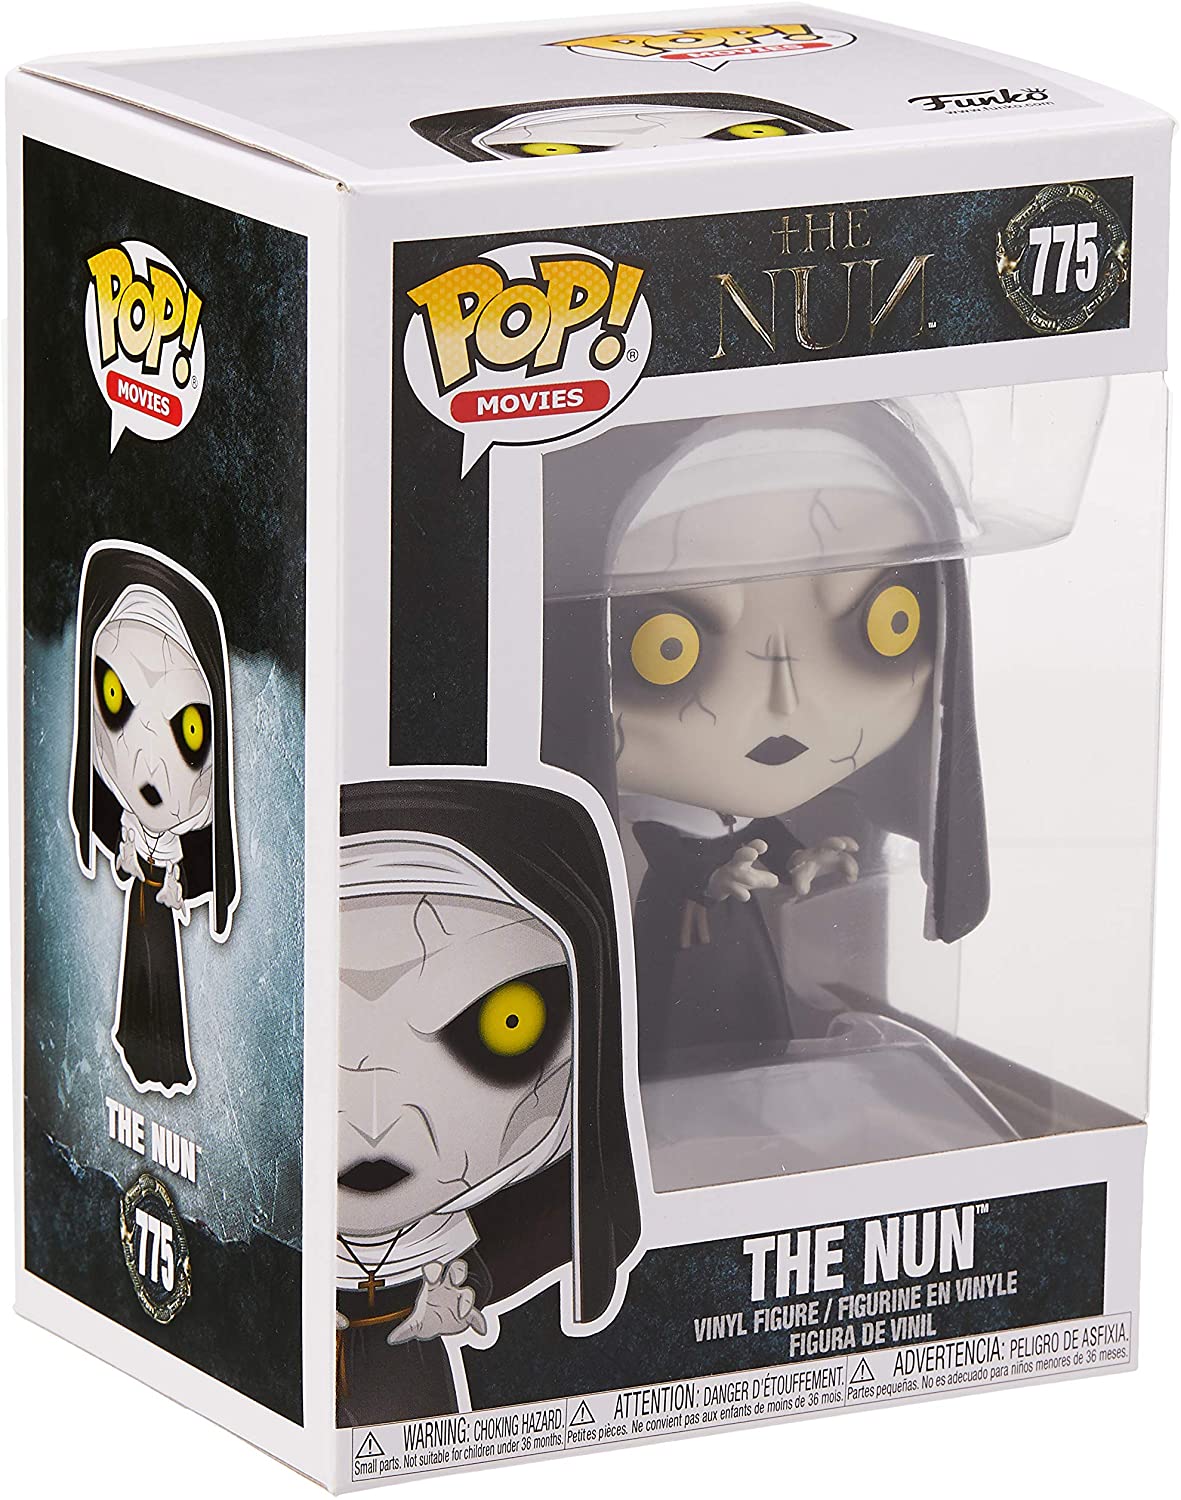 THE NUN – THE NUN #775 POP